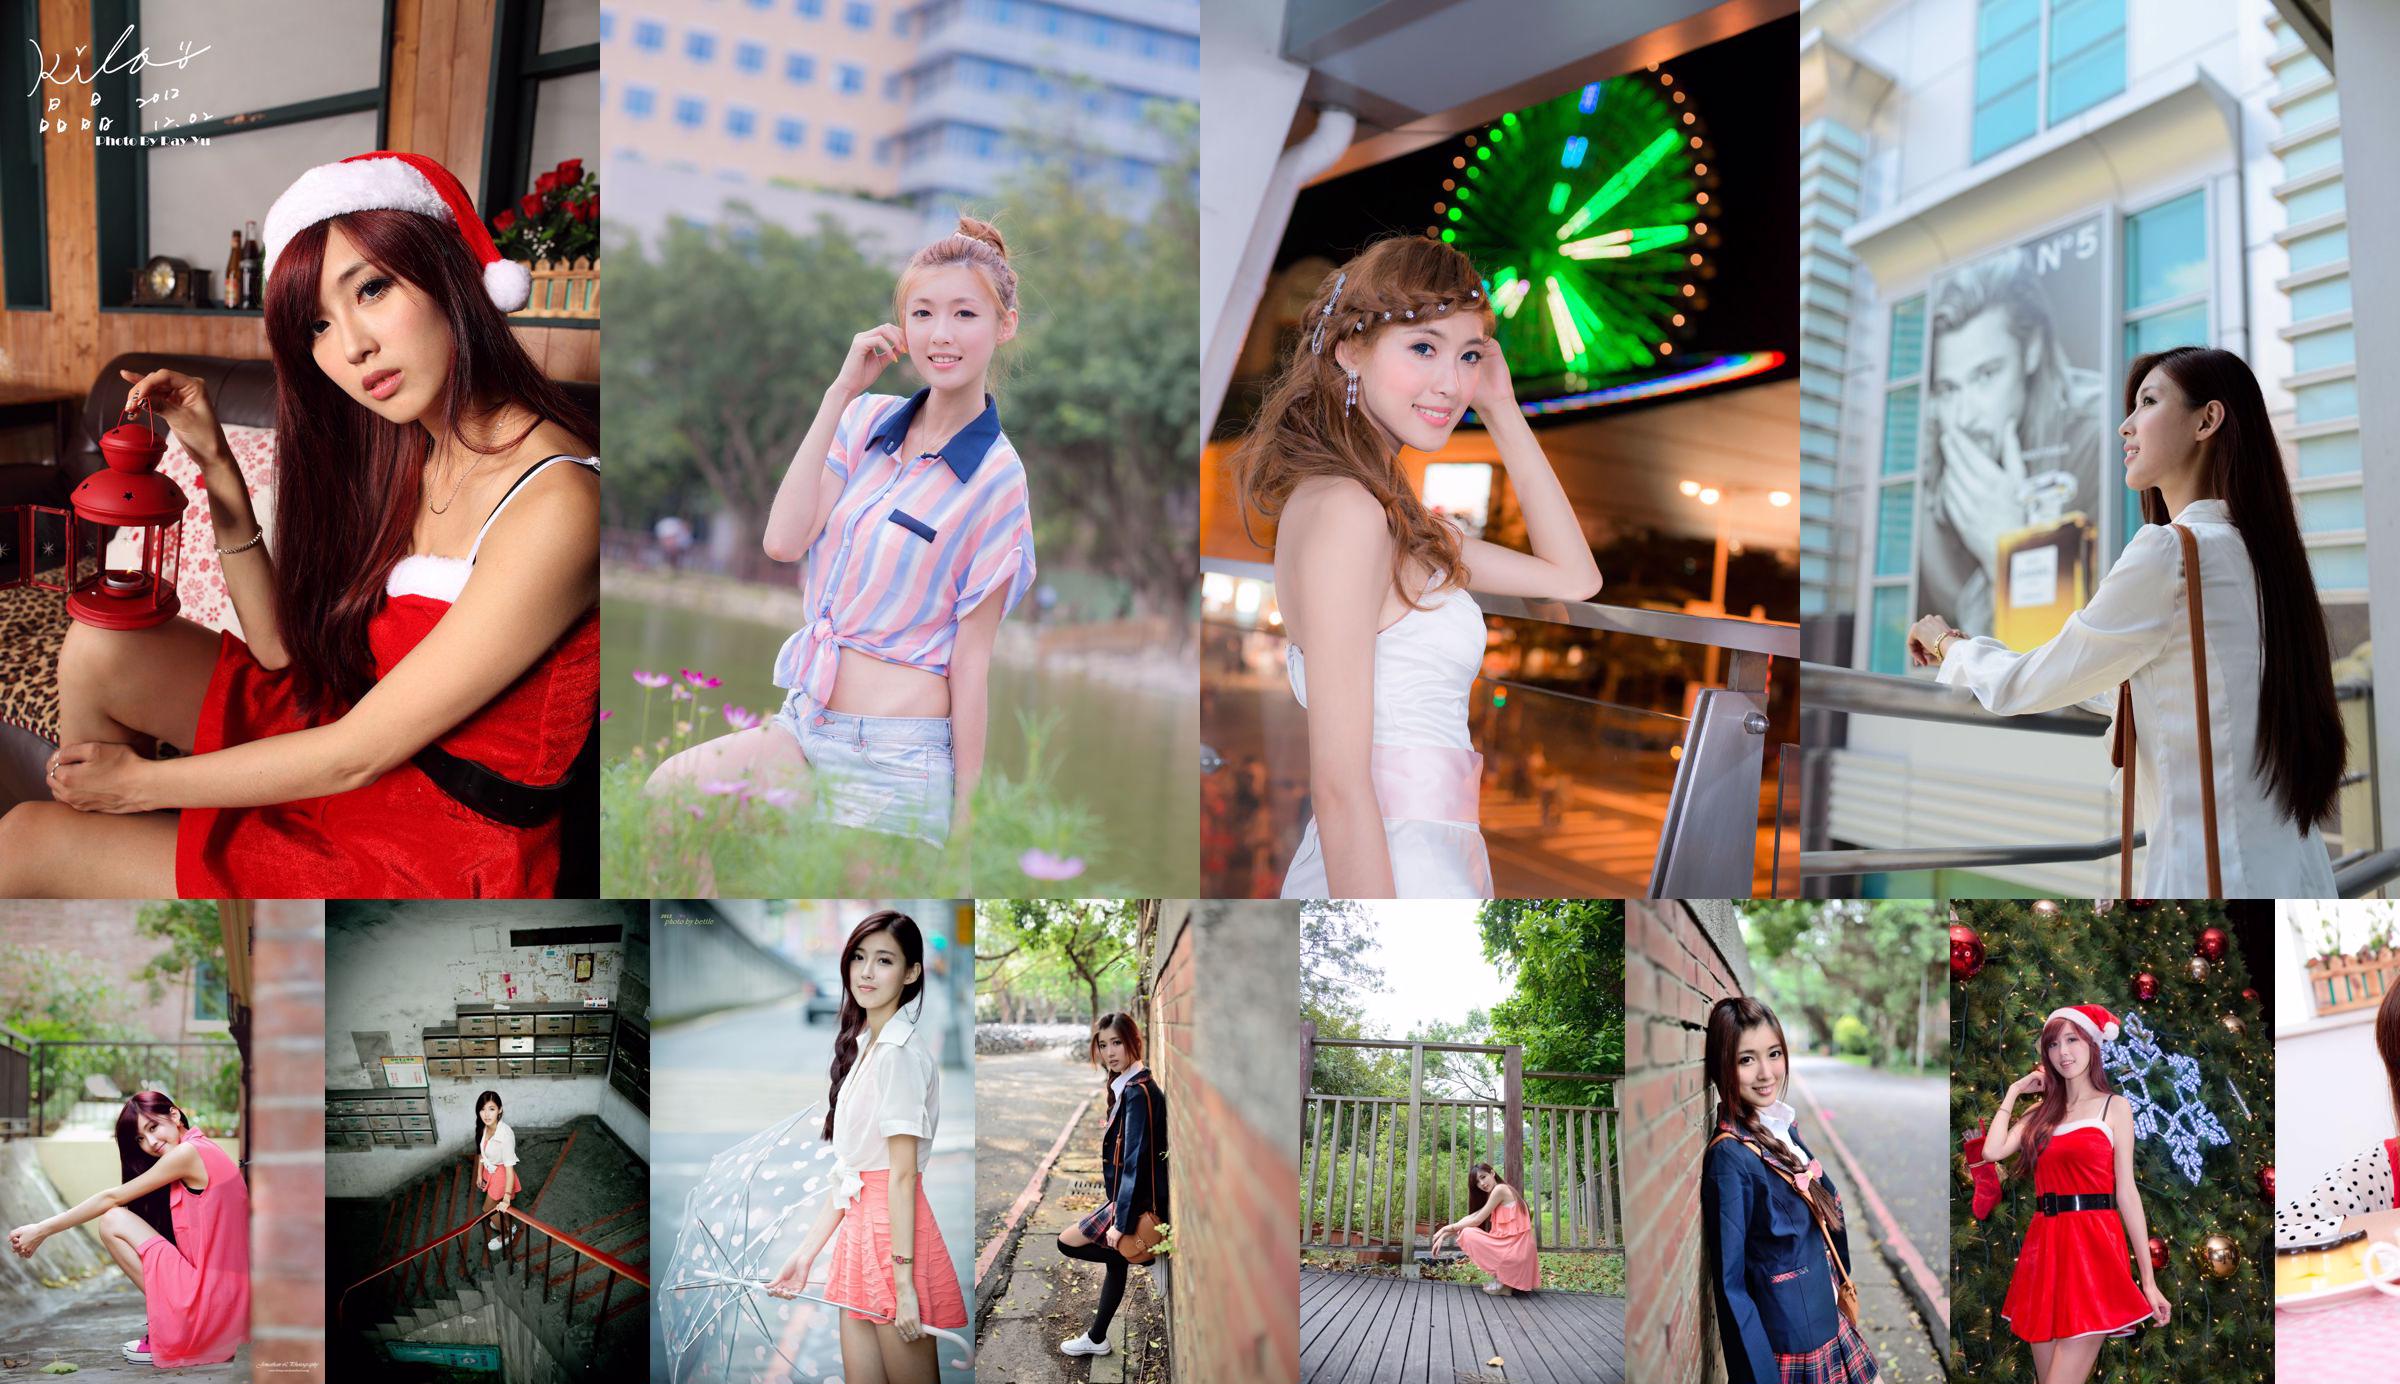 Coleção de fotos da onda 2 do "Campus Beauty Shooting" de Kim Yun-kyo / Kila Jingjing No.162a36 Página 2